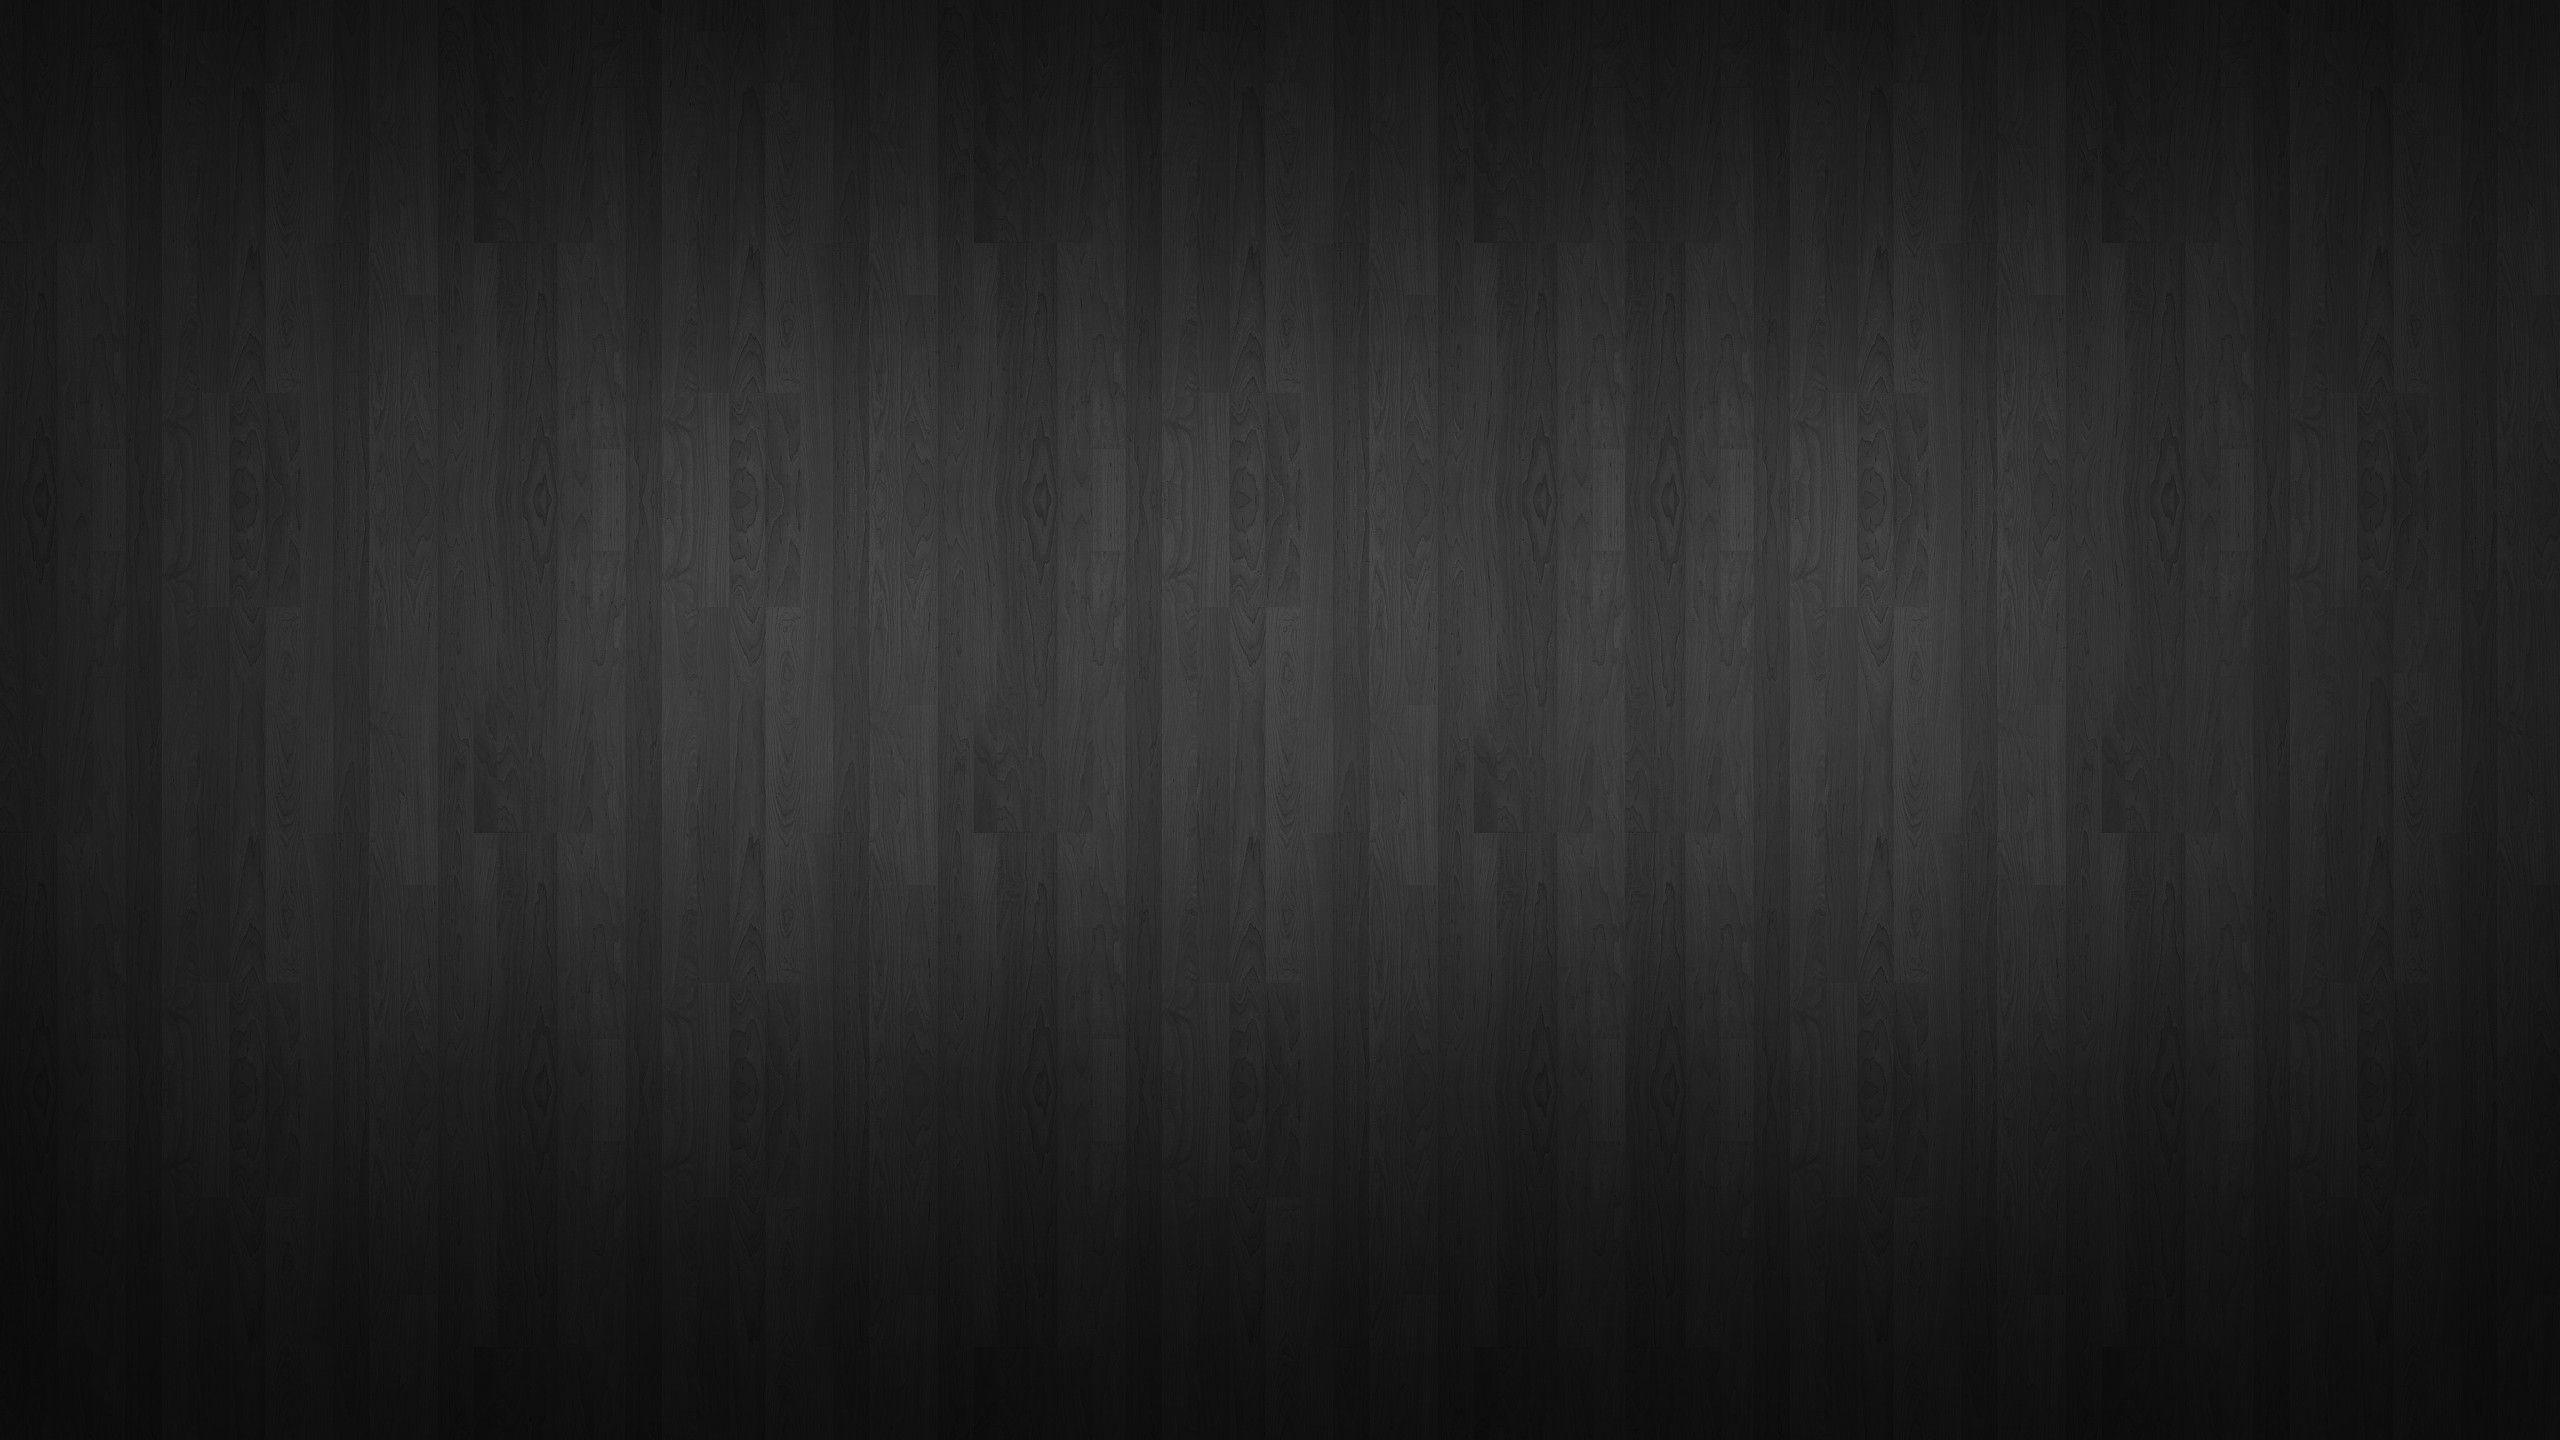 Dark Wood Wallpaper Background Image Dark